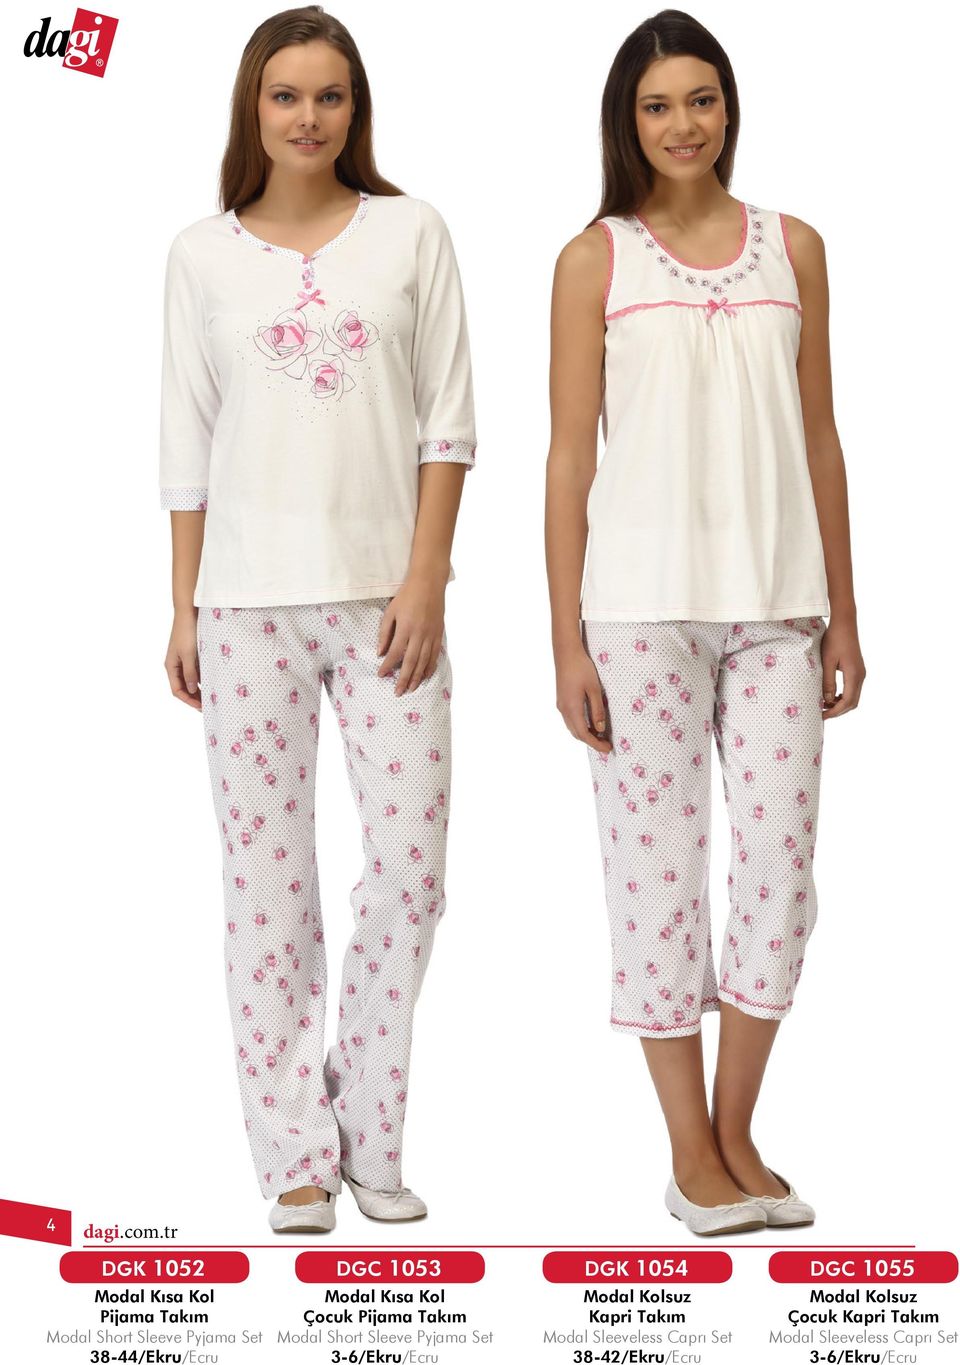 Pyjama Set 38-44/Ekru/Ecru Modal Kısa Kol Çocuk Pijama Takım Modal Short Sleeve